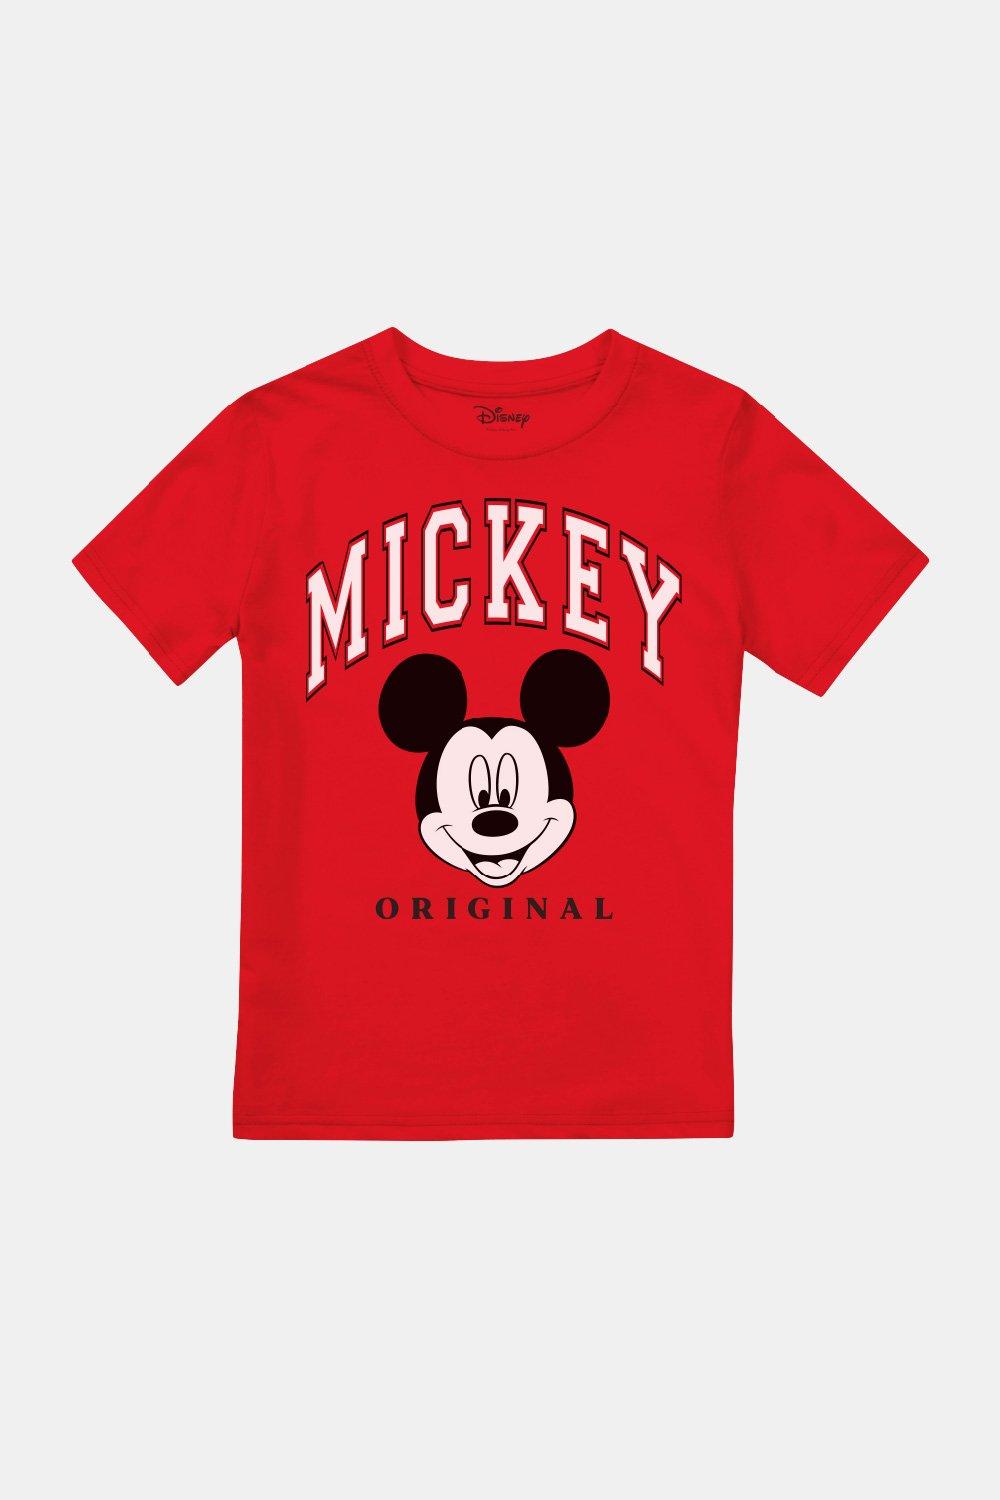 Оригинальная футболка с Микки Маусом для мальчиков Disney, красный детский конструктор hello kitty микки и минни маус